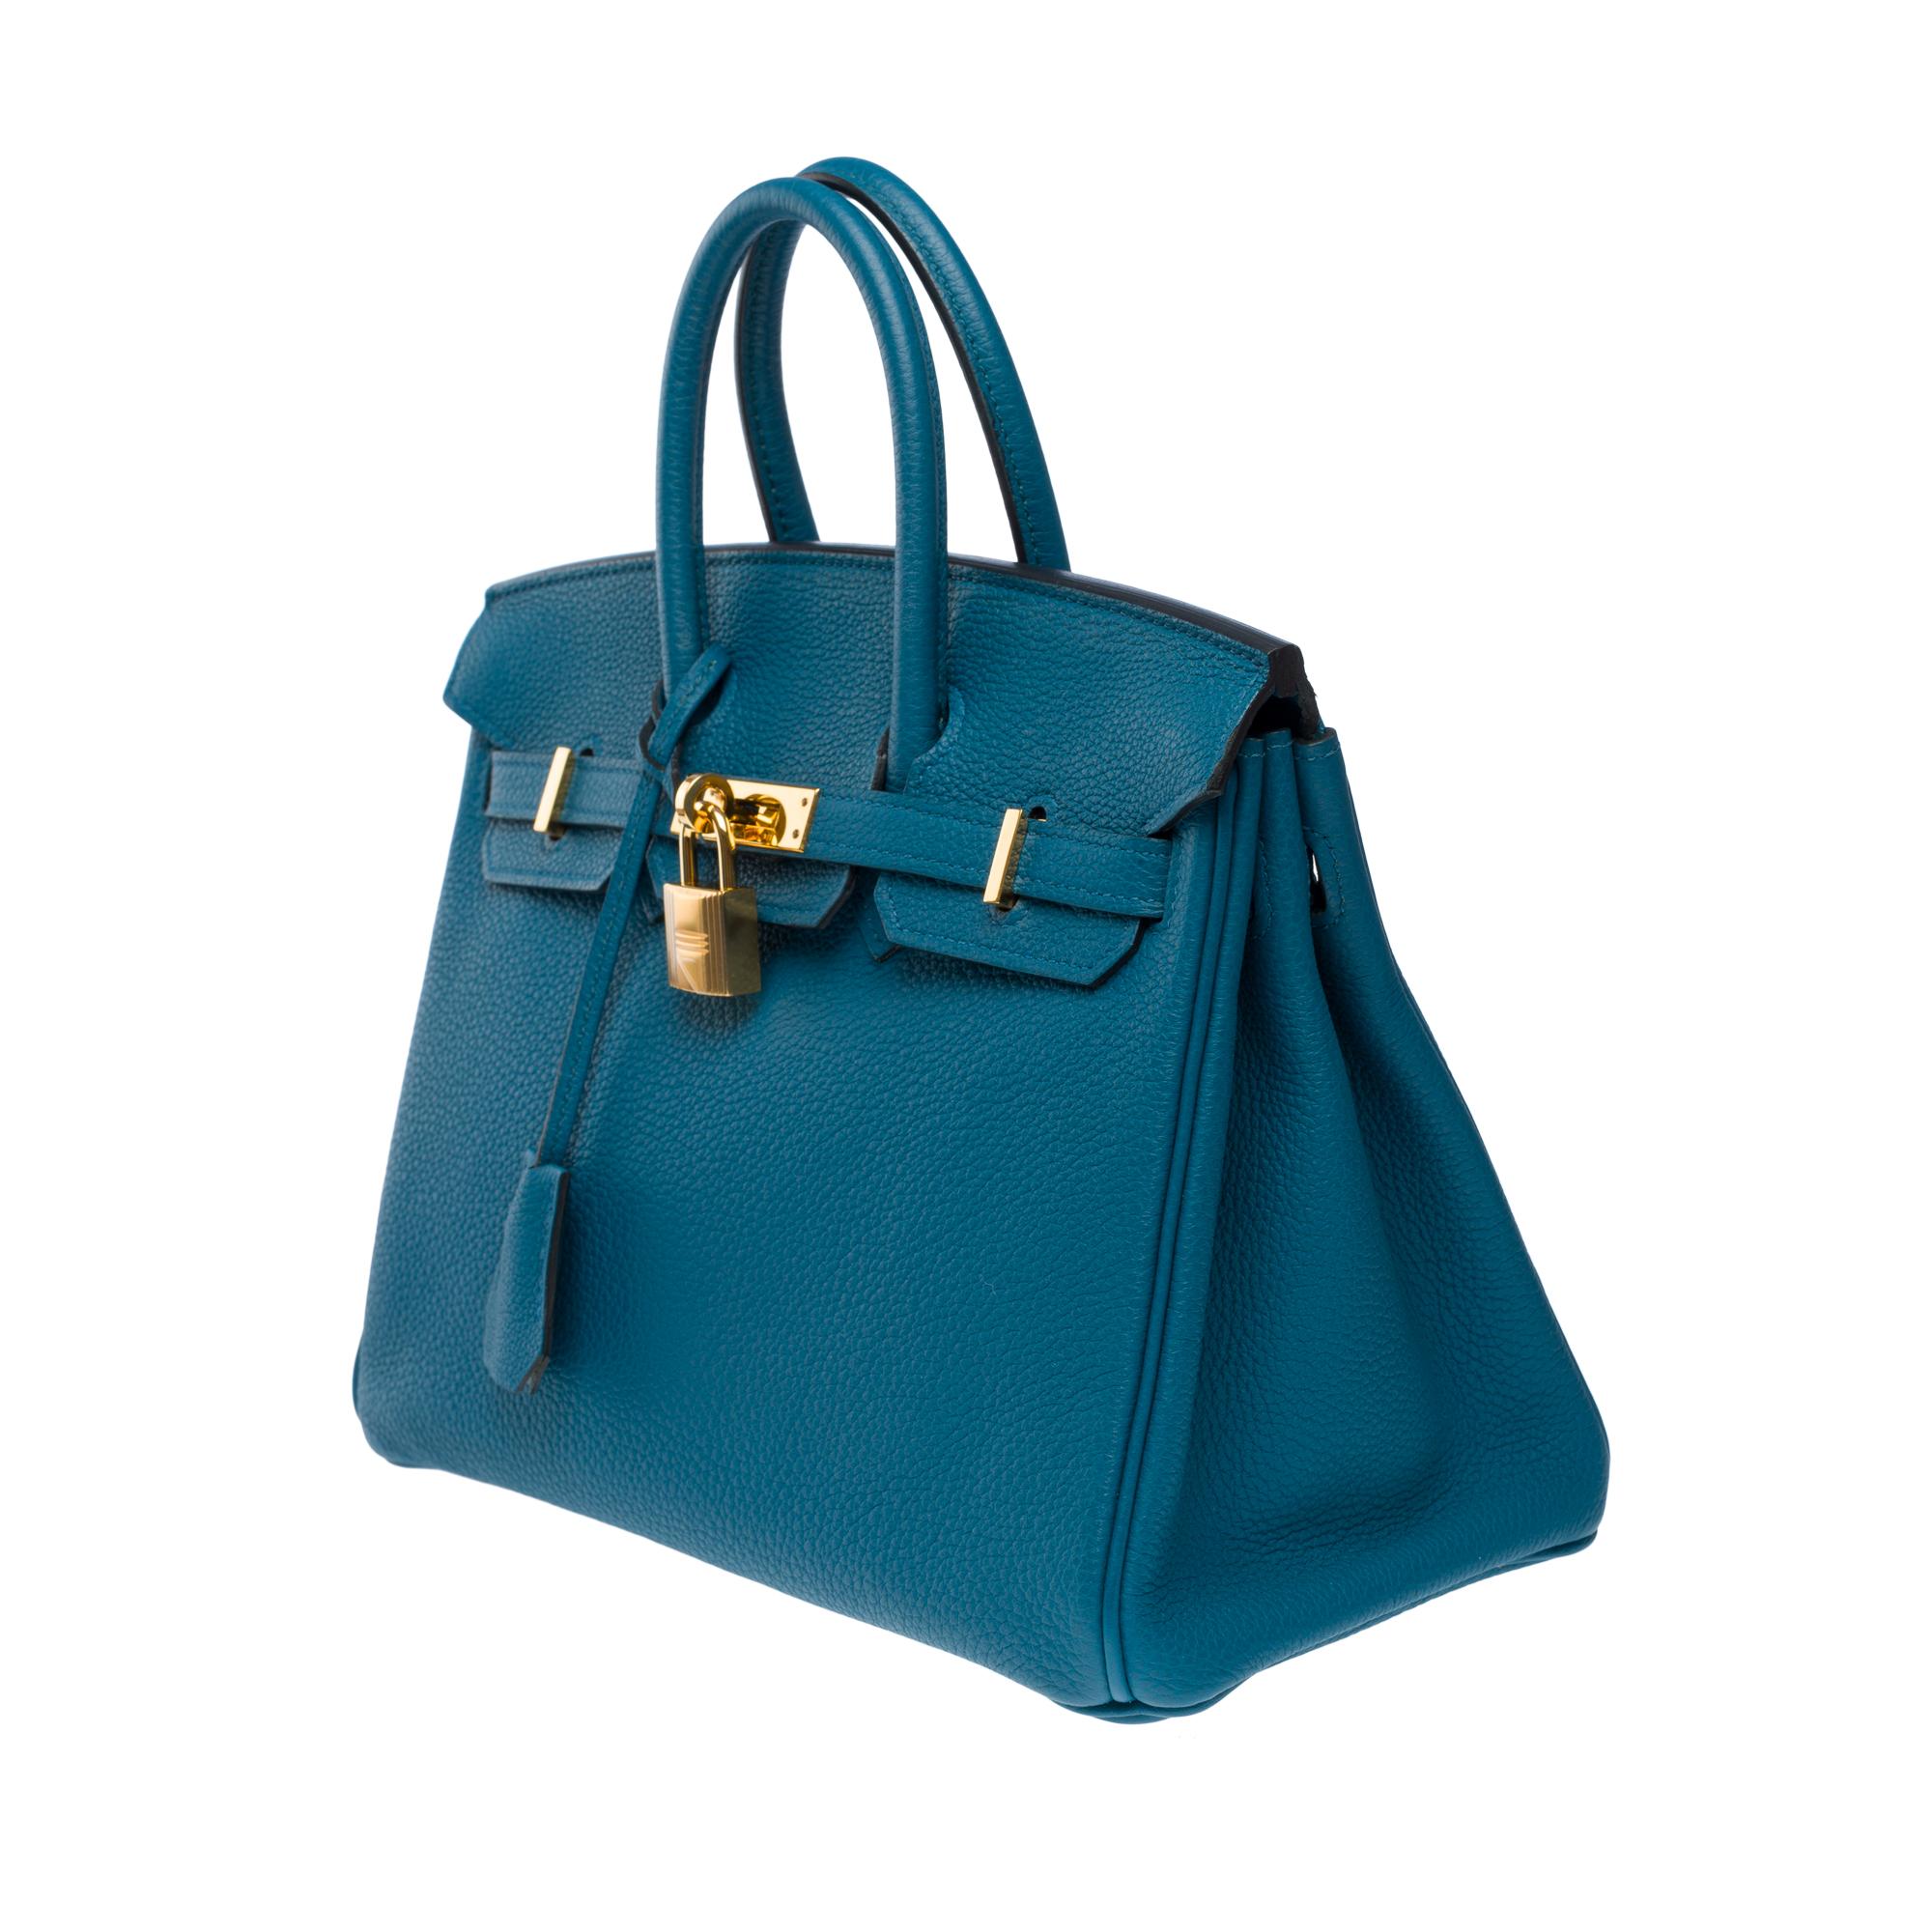 Amazing Hermes Birkin 25cm handbag in Togo Blue Cobalt leather, GHW For Sale 2